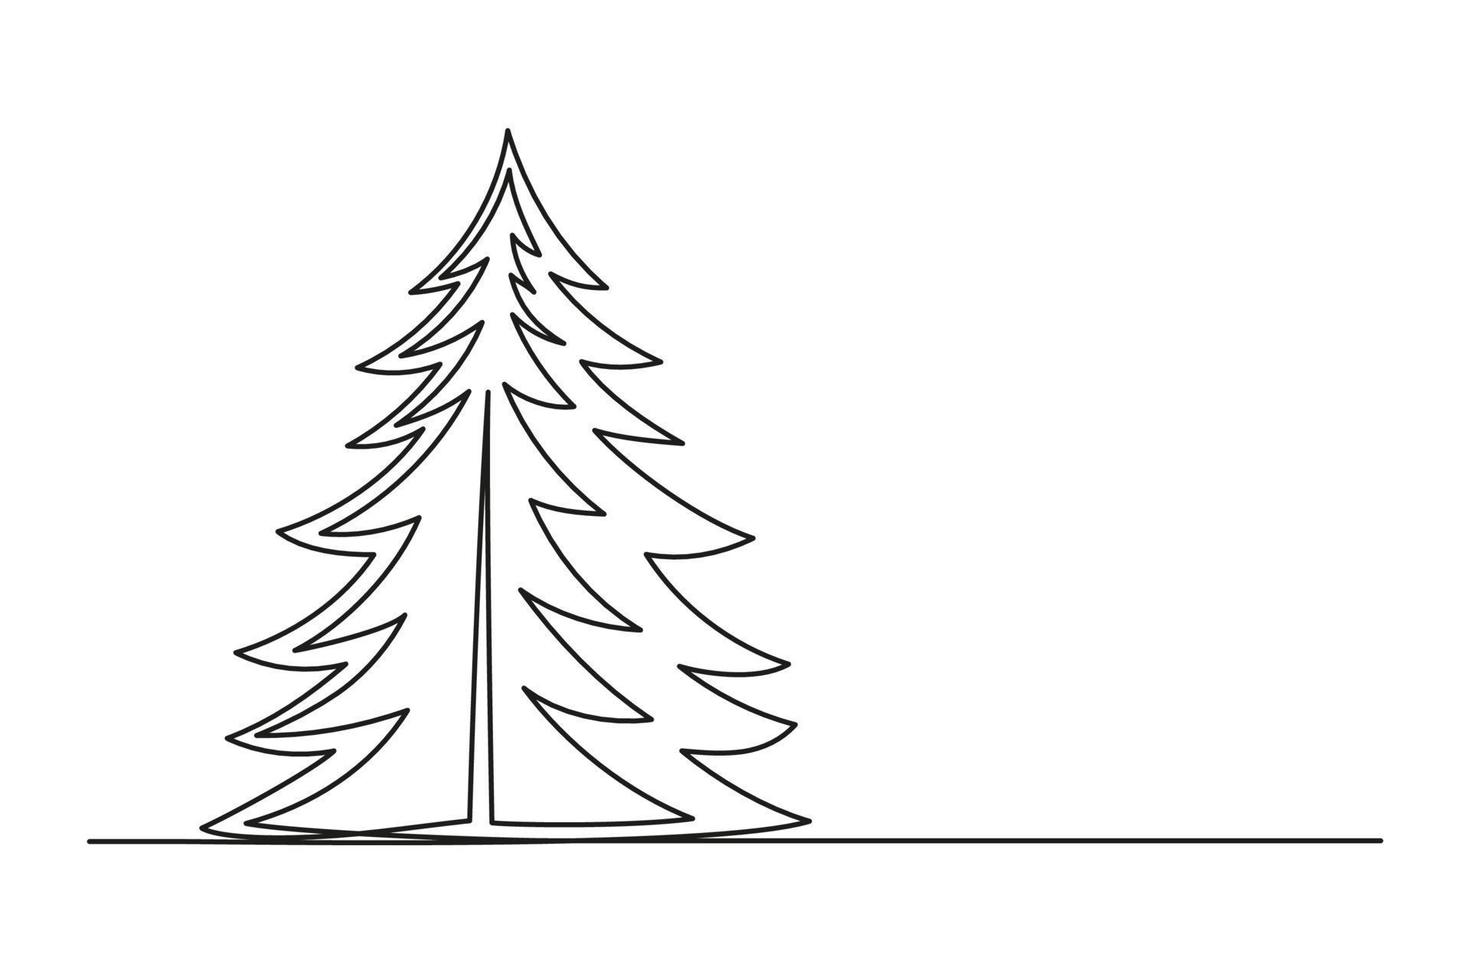 dibujo continuo de una línea del árbol de navidad vector